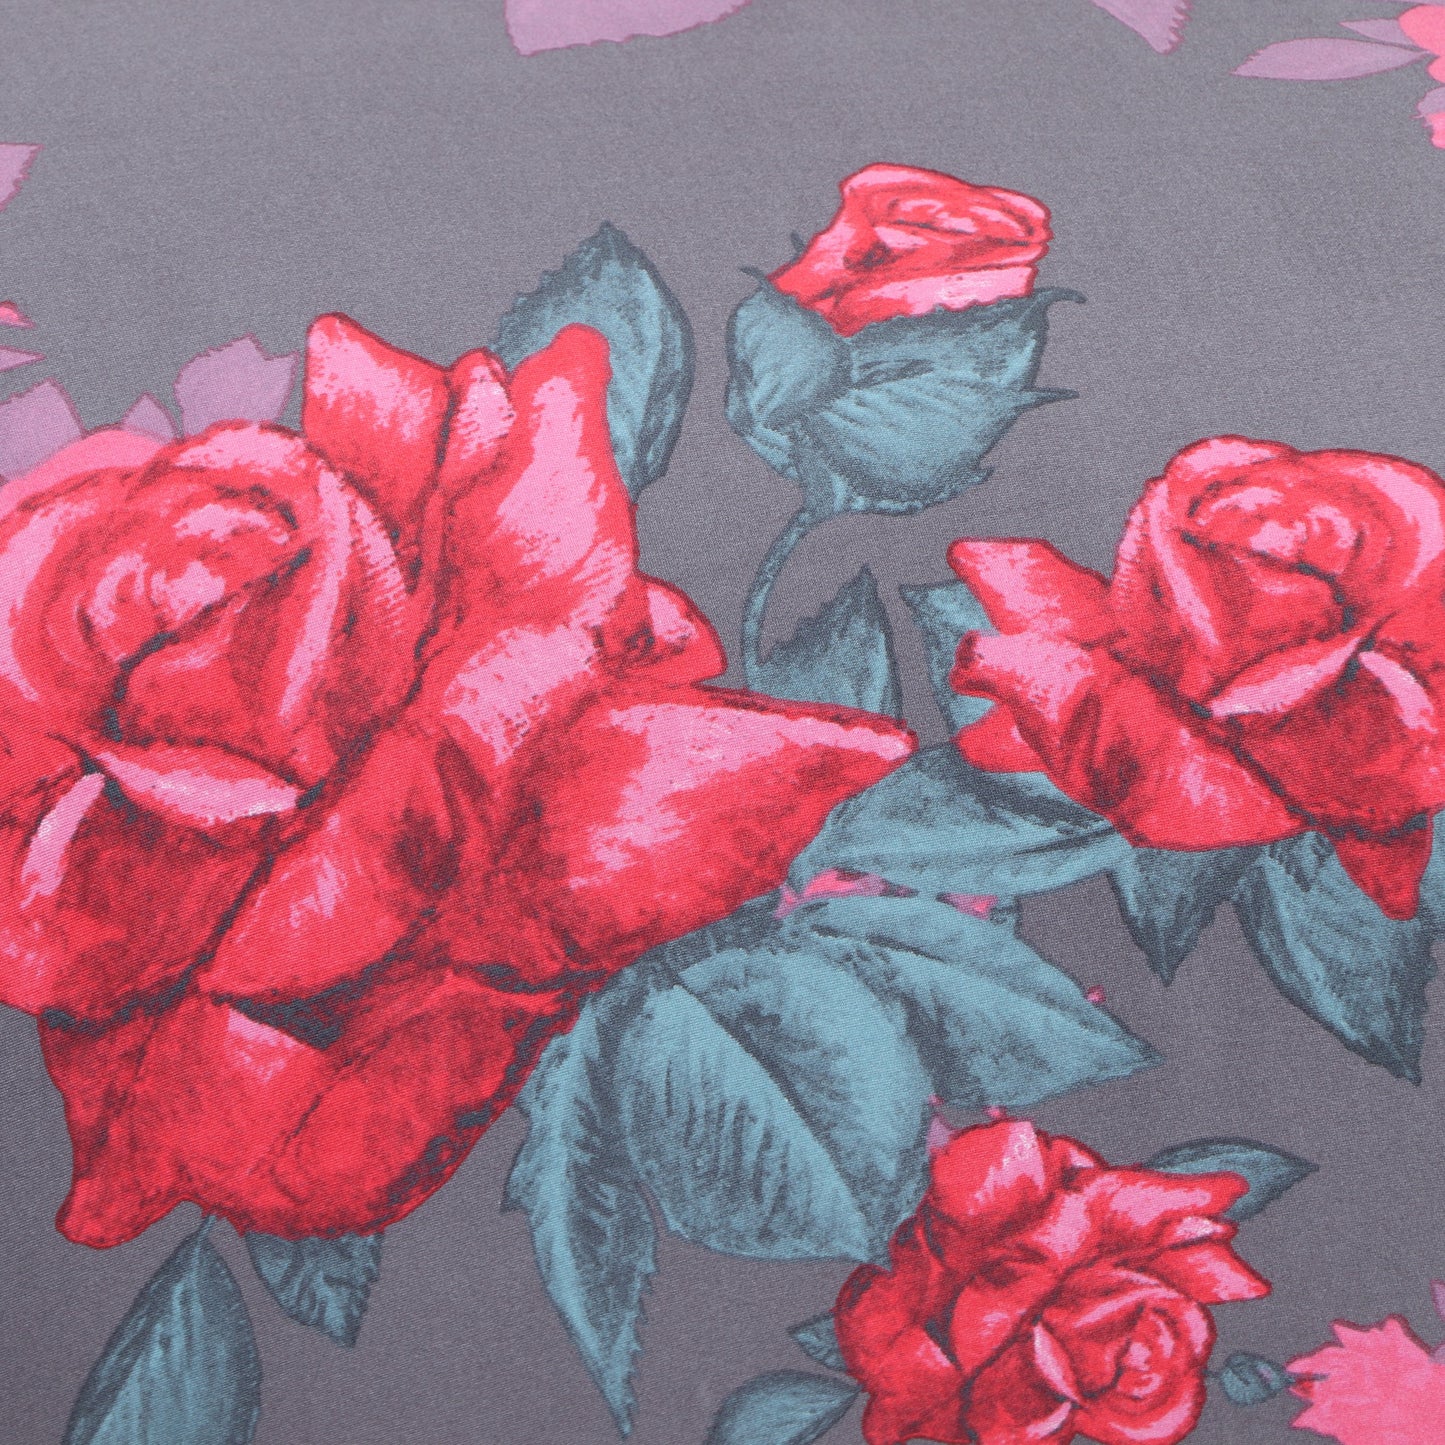 Printed Sofa Slipcover - Rose Dark Grey